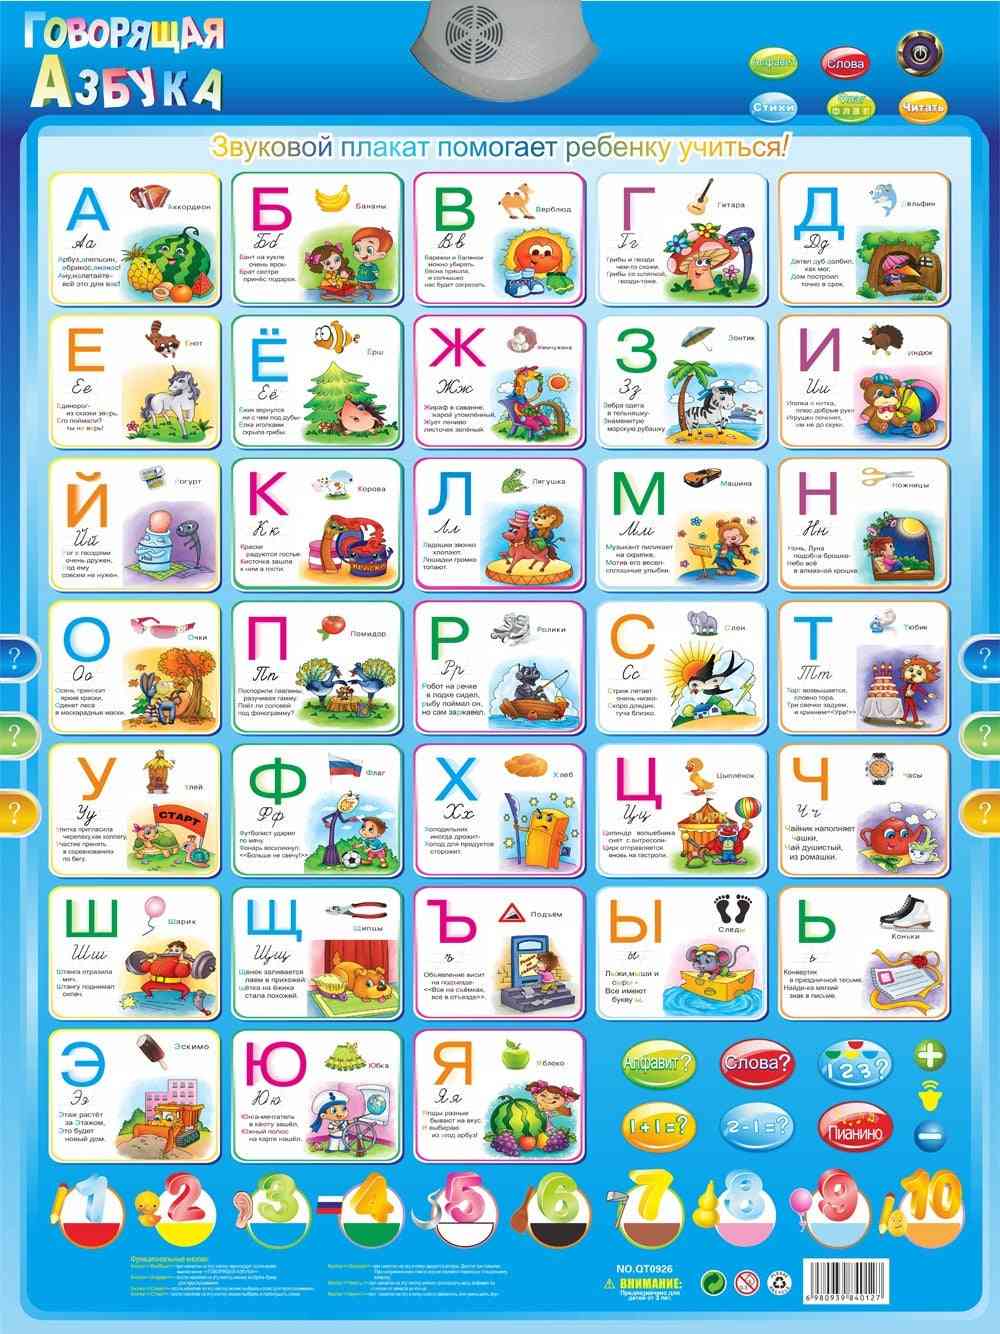 Elektronikus orosz nyelvtanuló gép - abc ábécé hangtáblája csecsemőknek